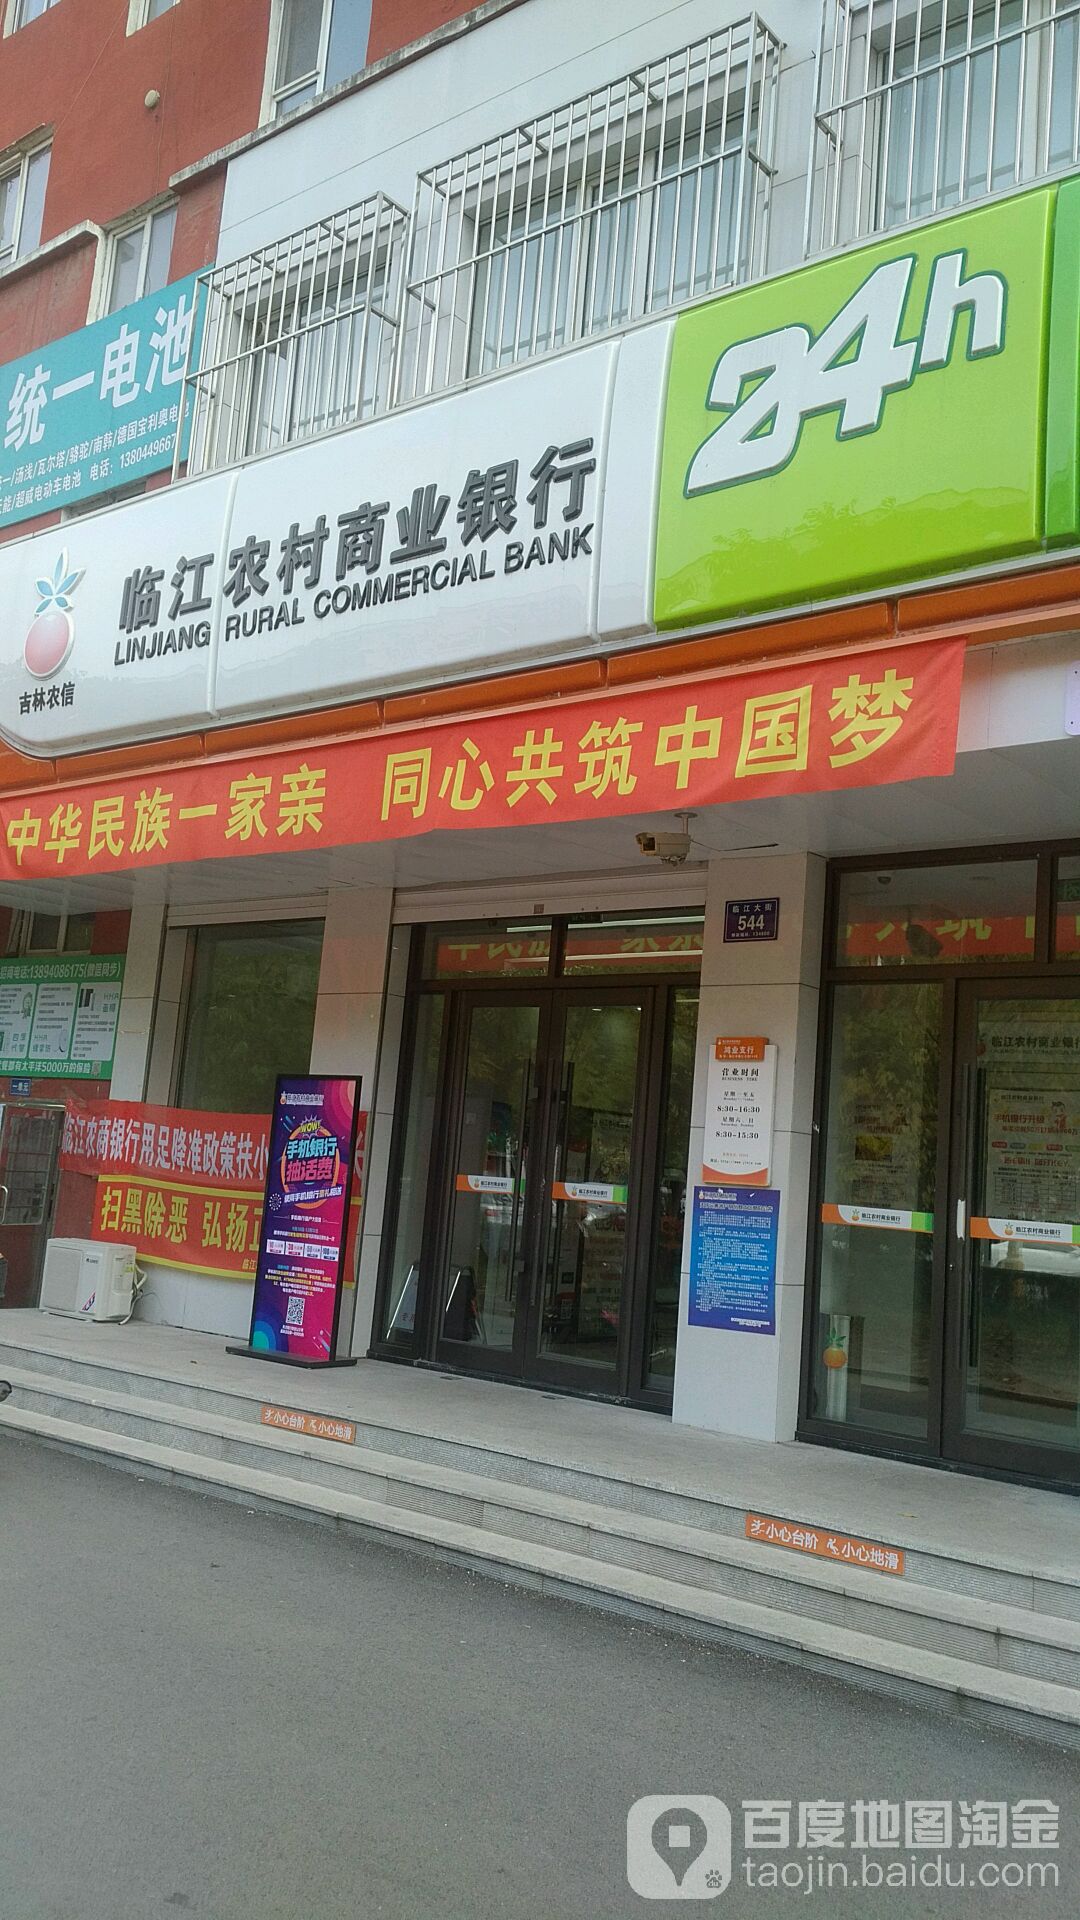 临江农村商业银行24小时自助银行(鸿业支行)